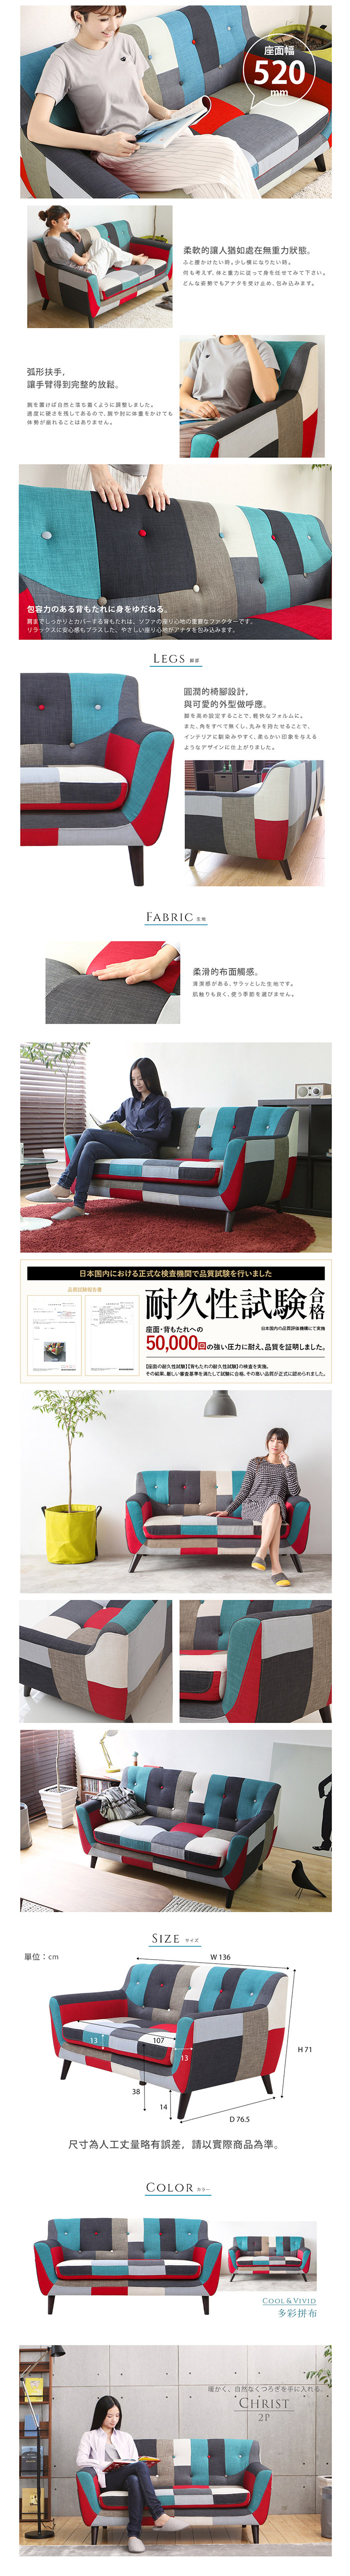 【日本品牌MODERN DECO】克里斯藍色拼布雙人沙發/H&D東稻家居